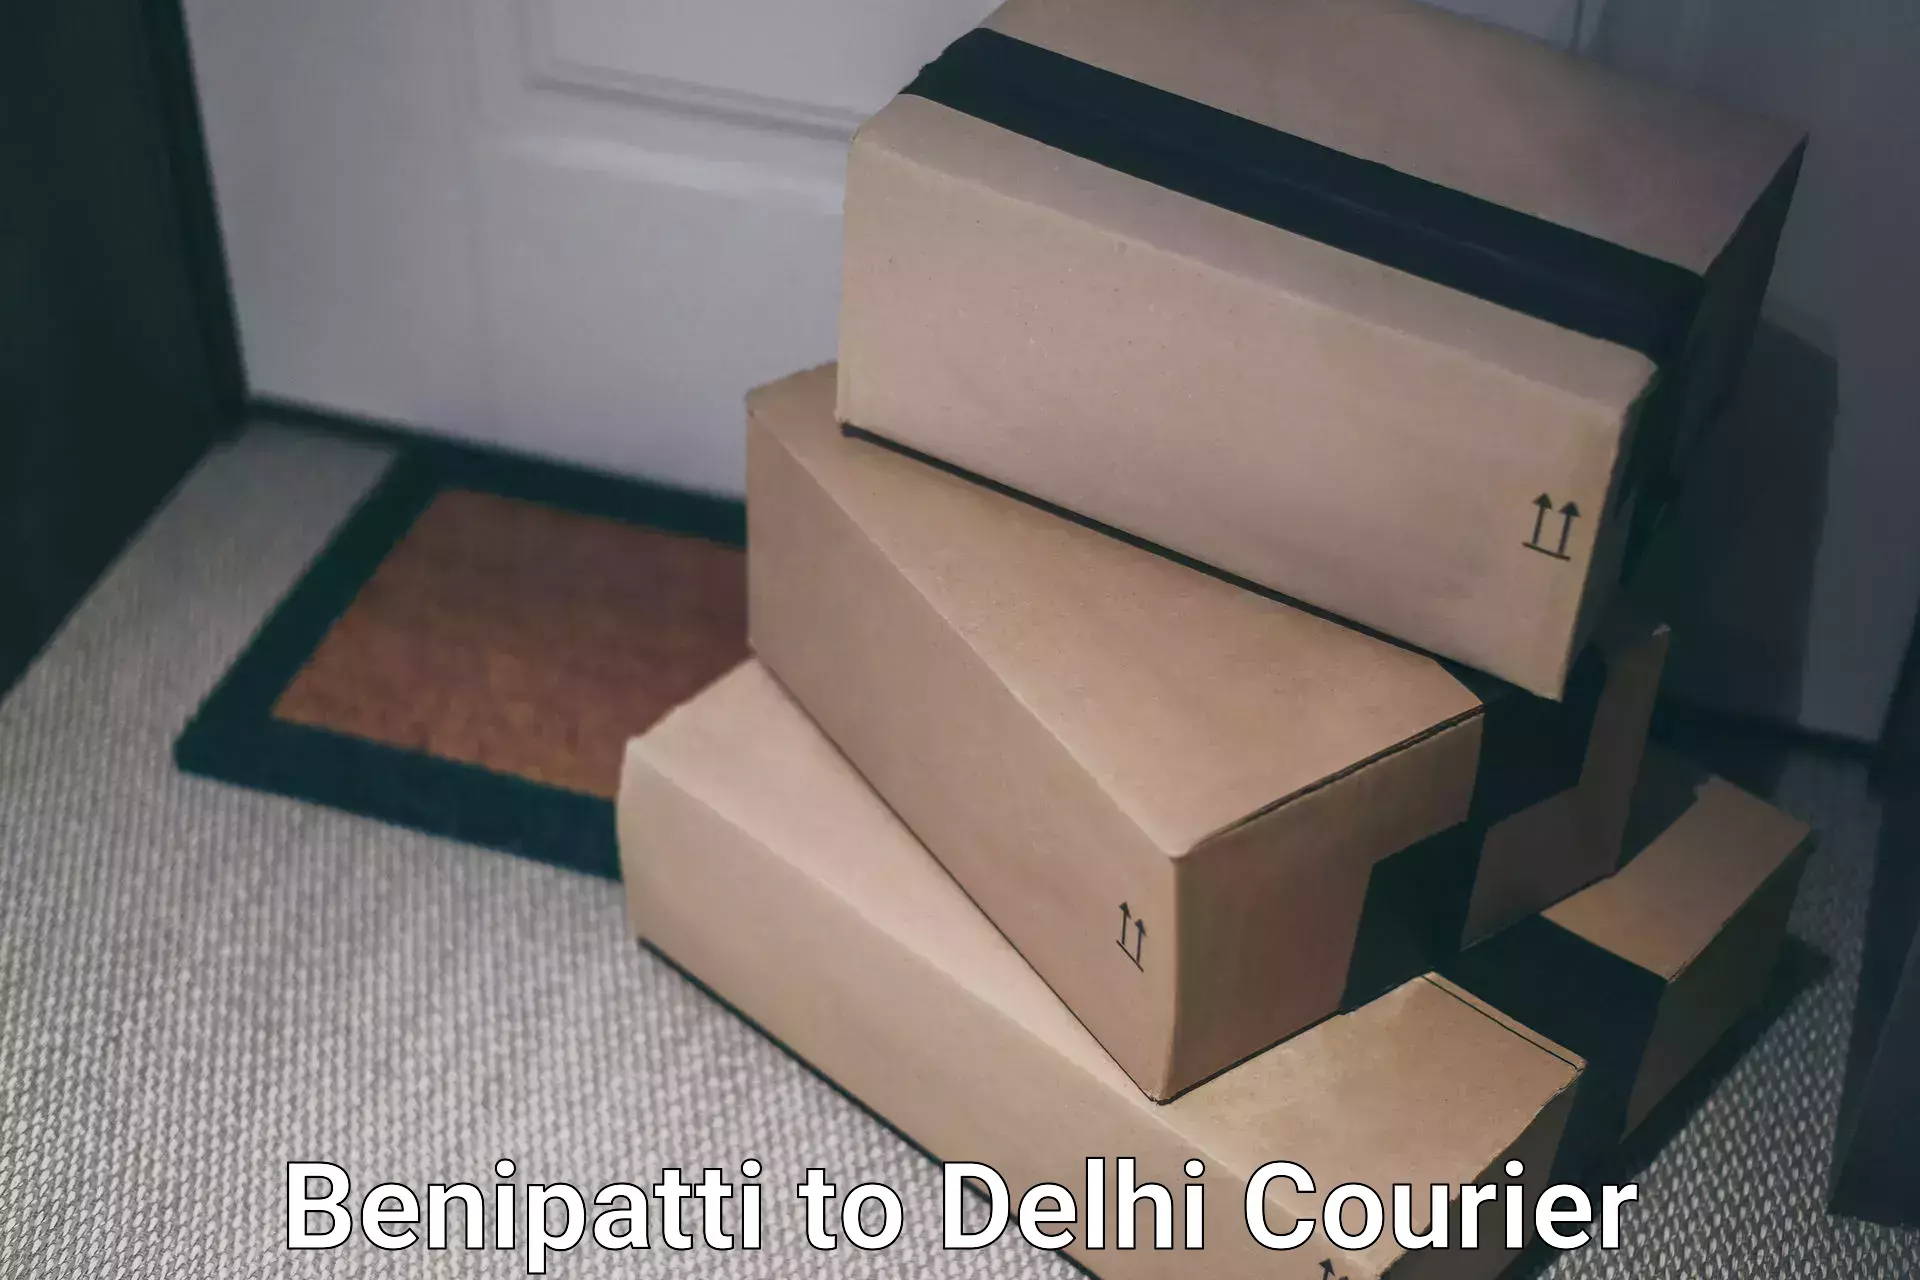 Same-day delivery solutions Benipatti to Delhi